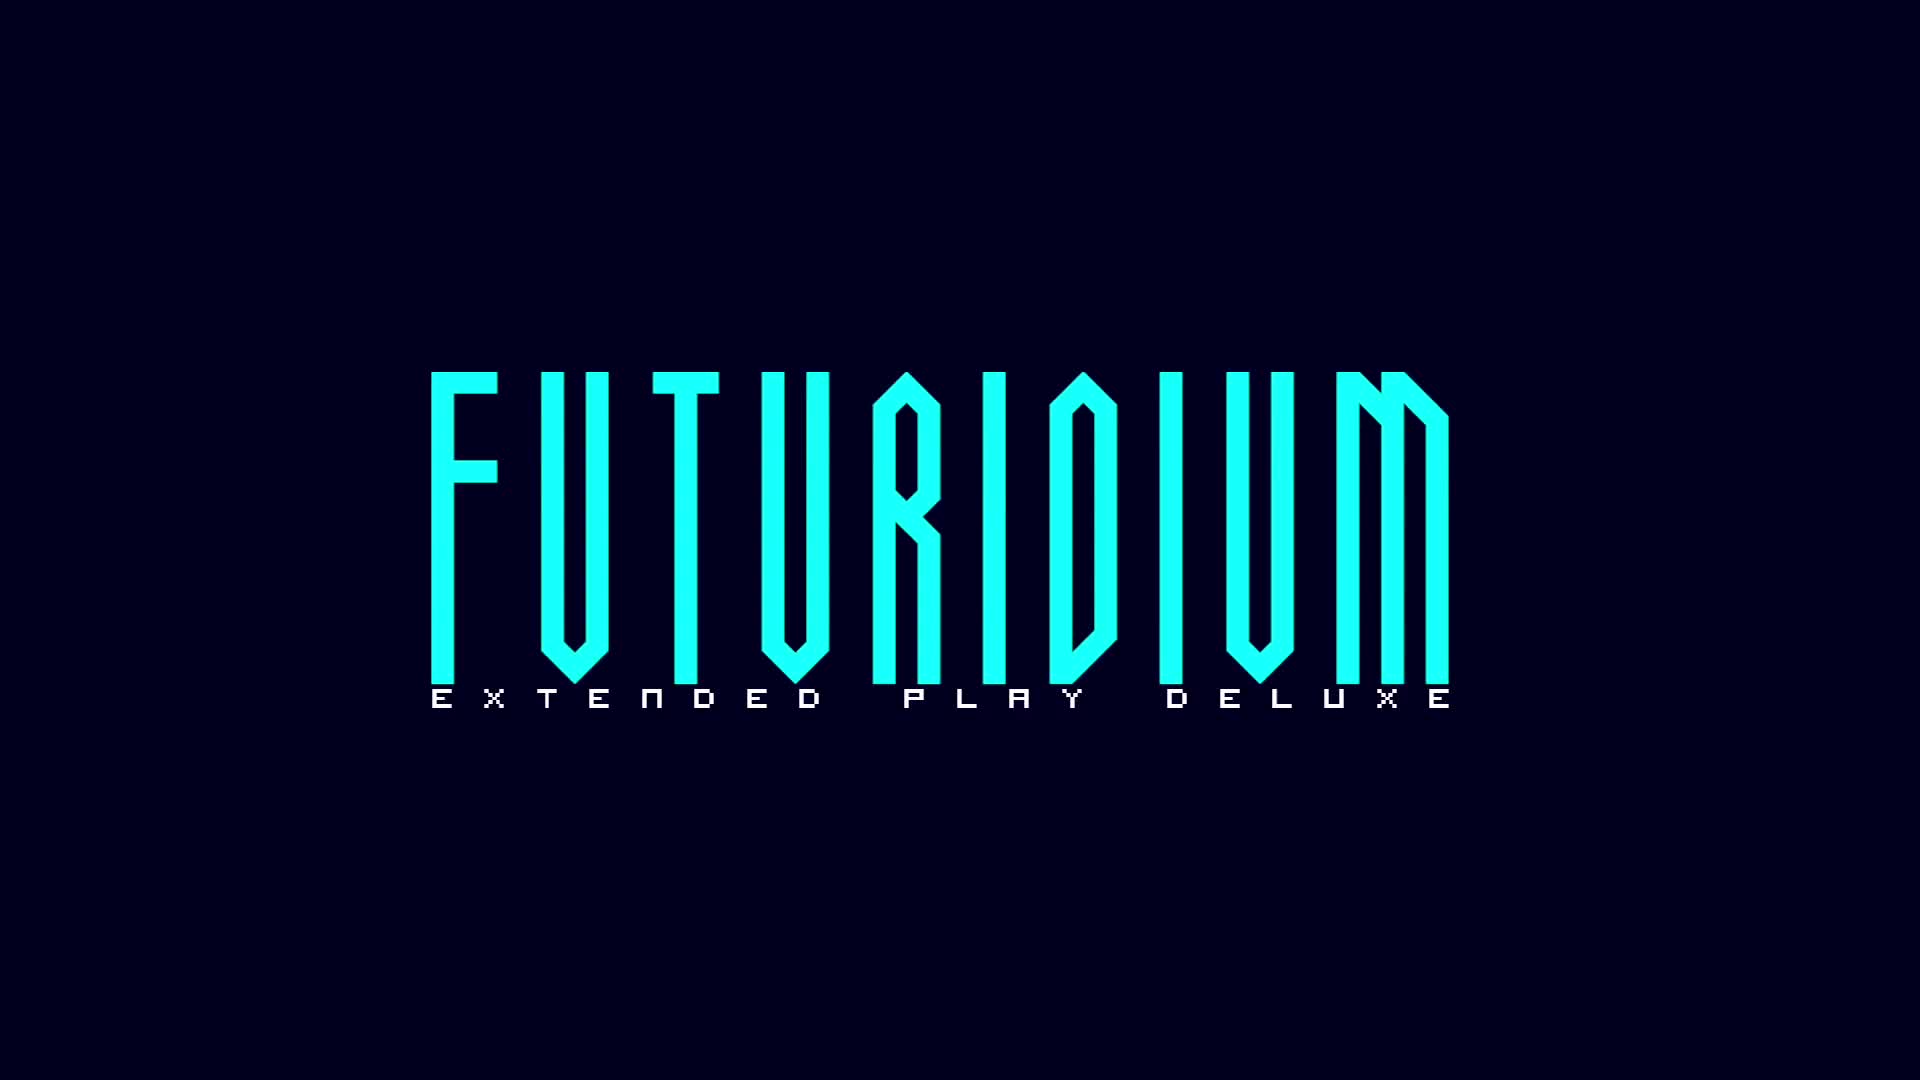 Futuridium EP Deluxe - Gameplay Trailer